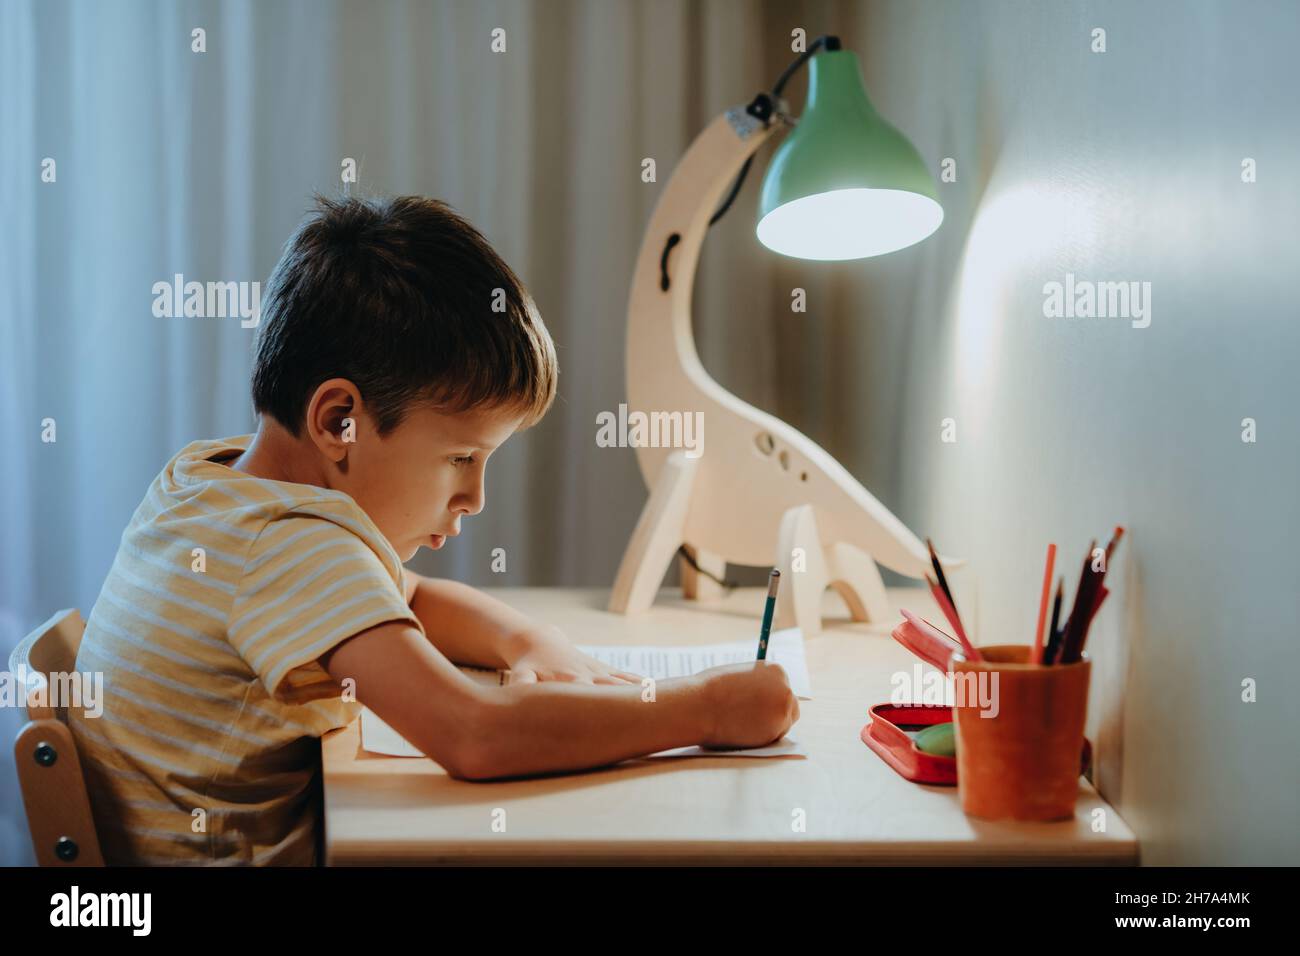 Junge macht seine Hausaufgaben, während er am Schreibtisch sitzt. Home interier.DIY Dinosaurier-Lampe beleuchtet die Tischplatte Stockfoto